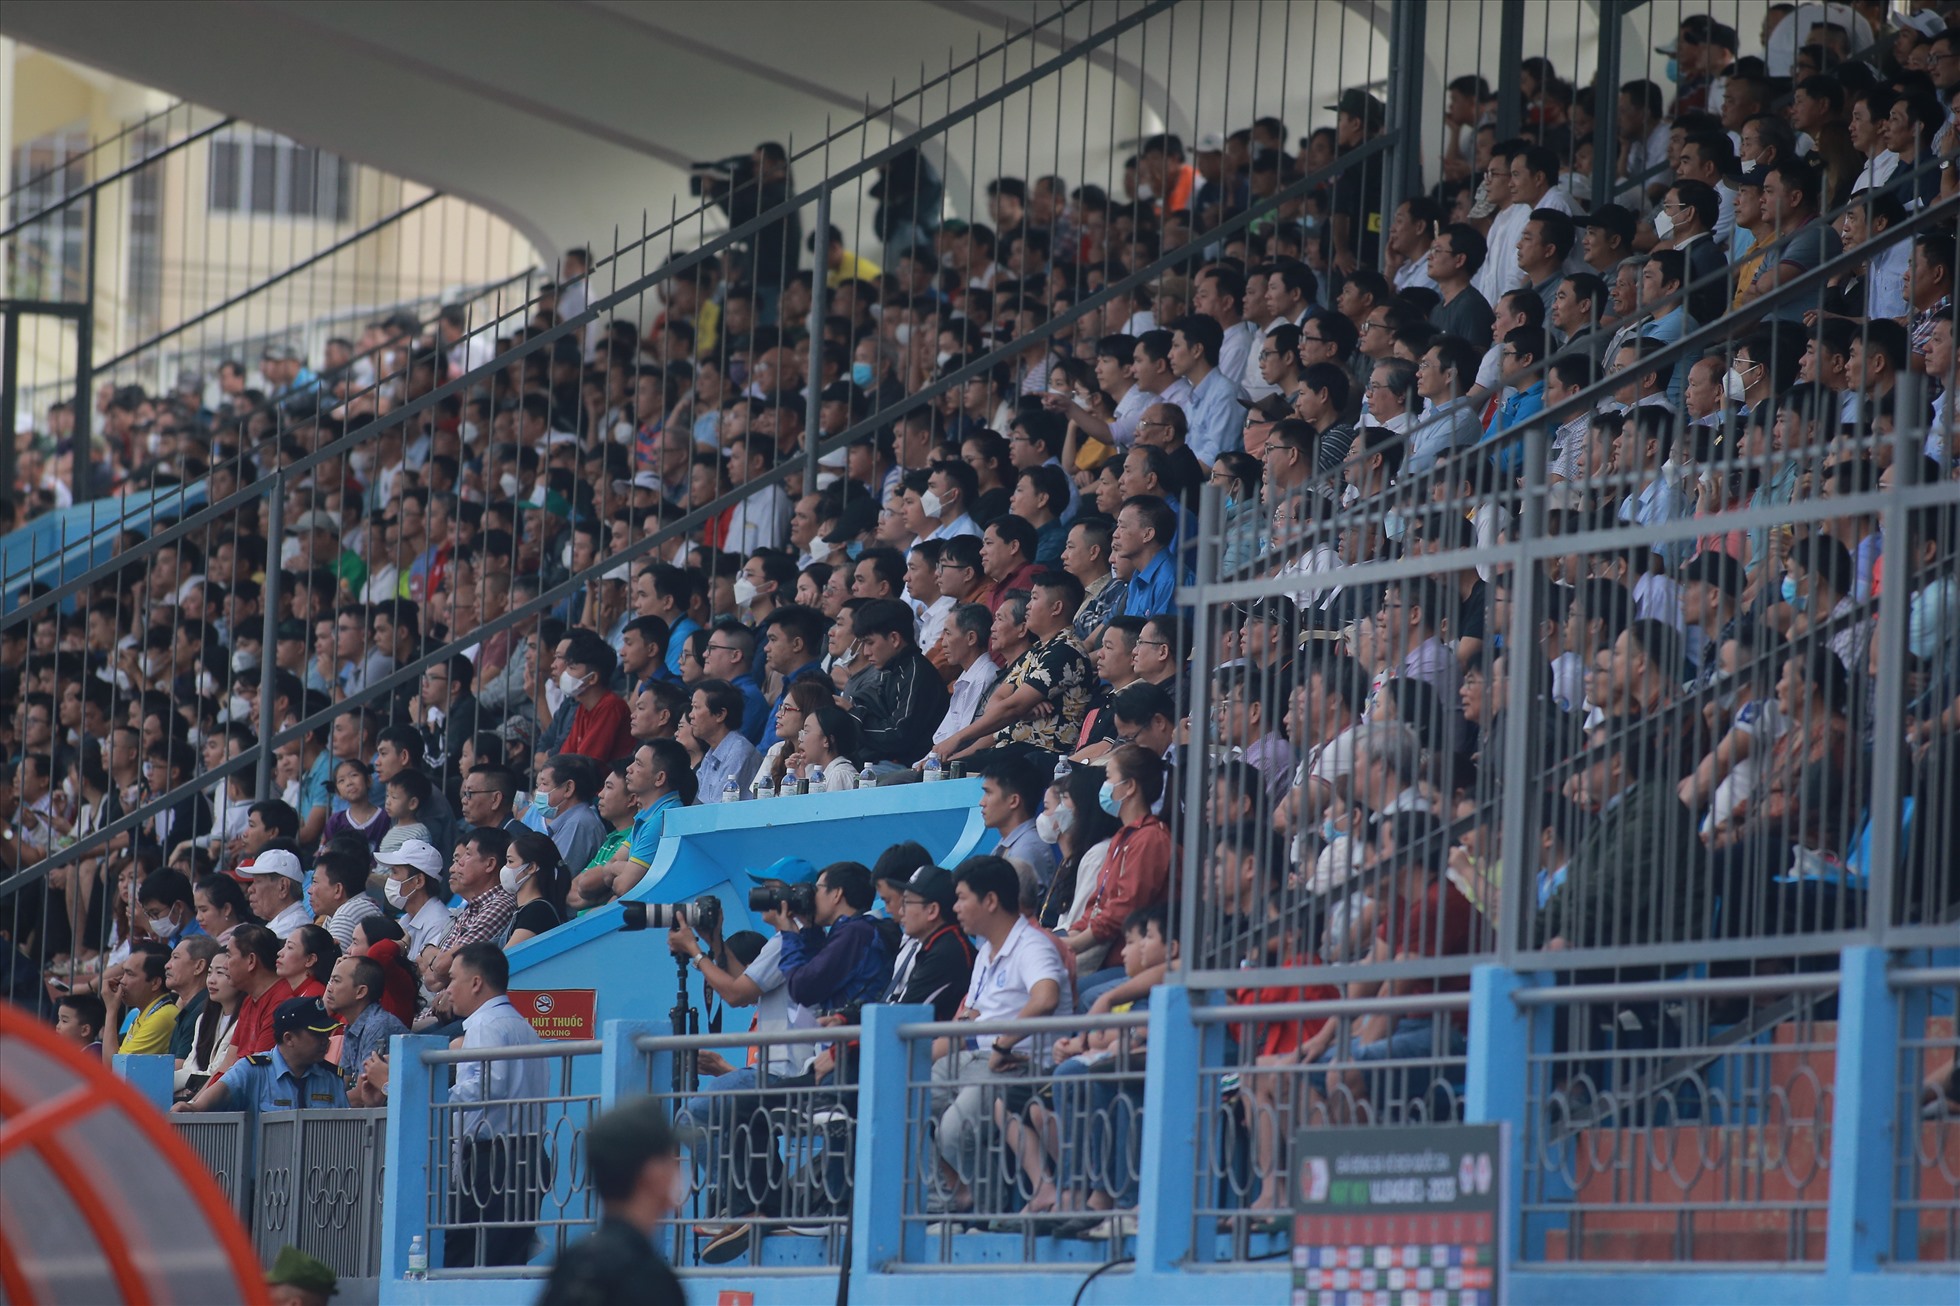 Chiều 3.2, câu lạc bộ Khánh Hòa có trận đầu tiên ở V.League 2023 trên sân nhà đón tiếp Thanh Hóa. Đây là lần đầu tiên khán giả Khánh Hòa có dịp hít thở không khí V.League sau 3 năm.